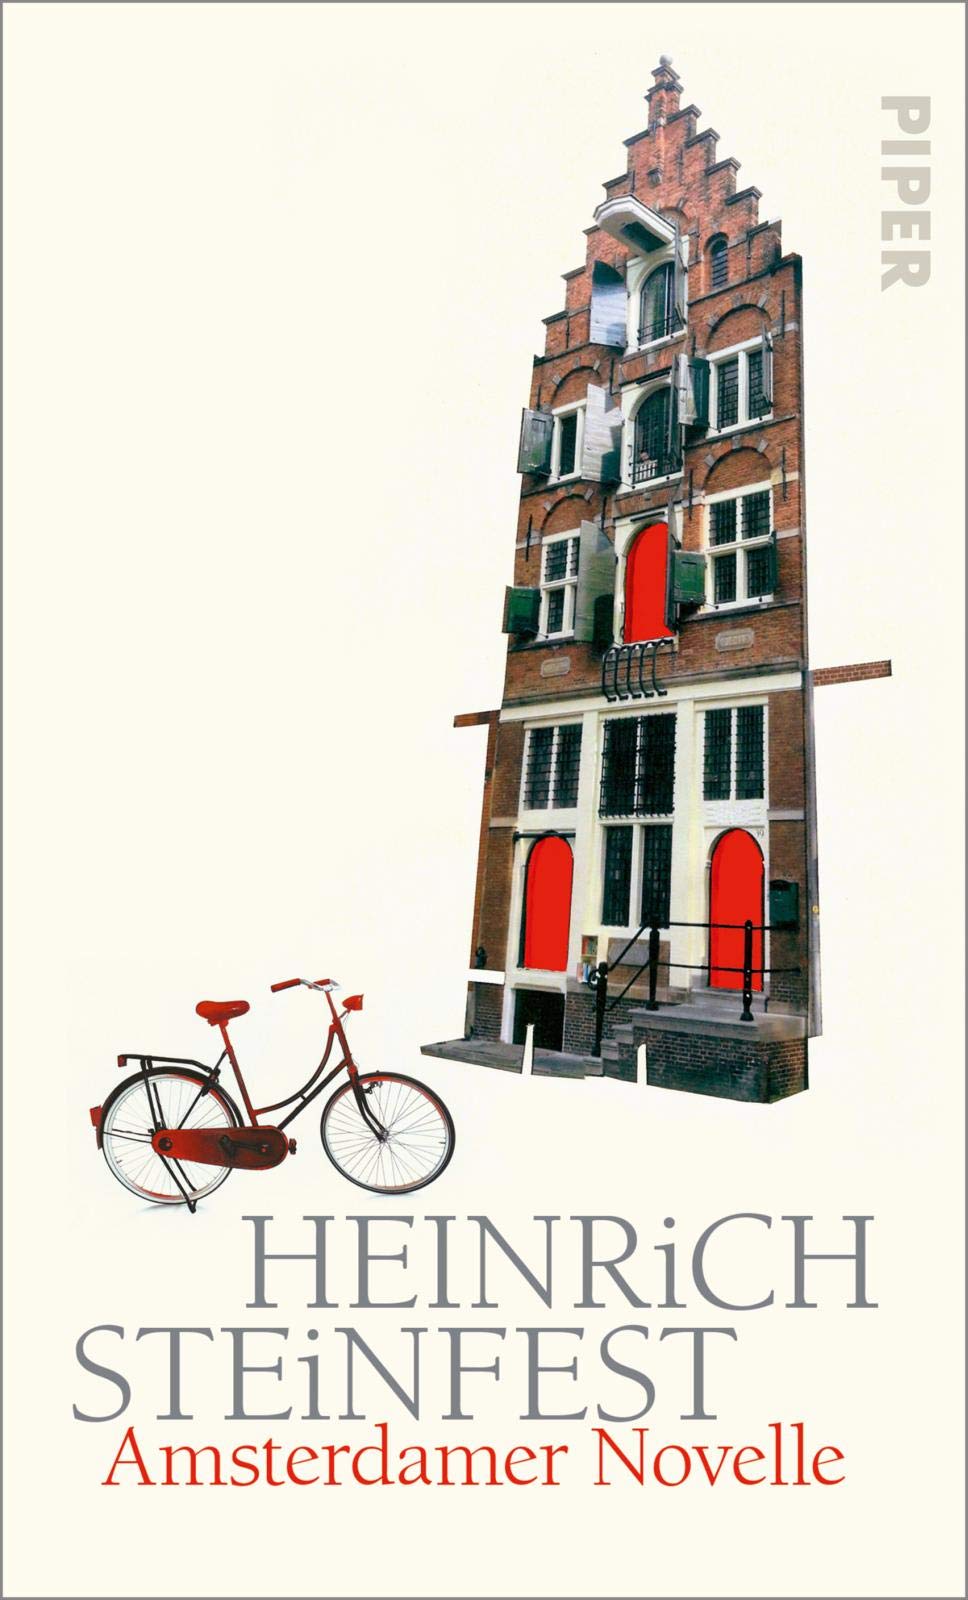 Buchcover von Heinrich Steinfest: Amsterdamer Novelle